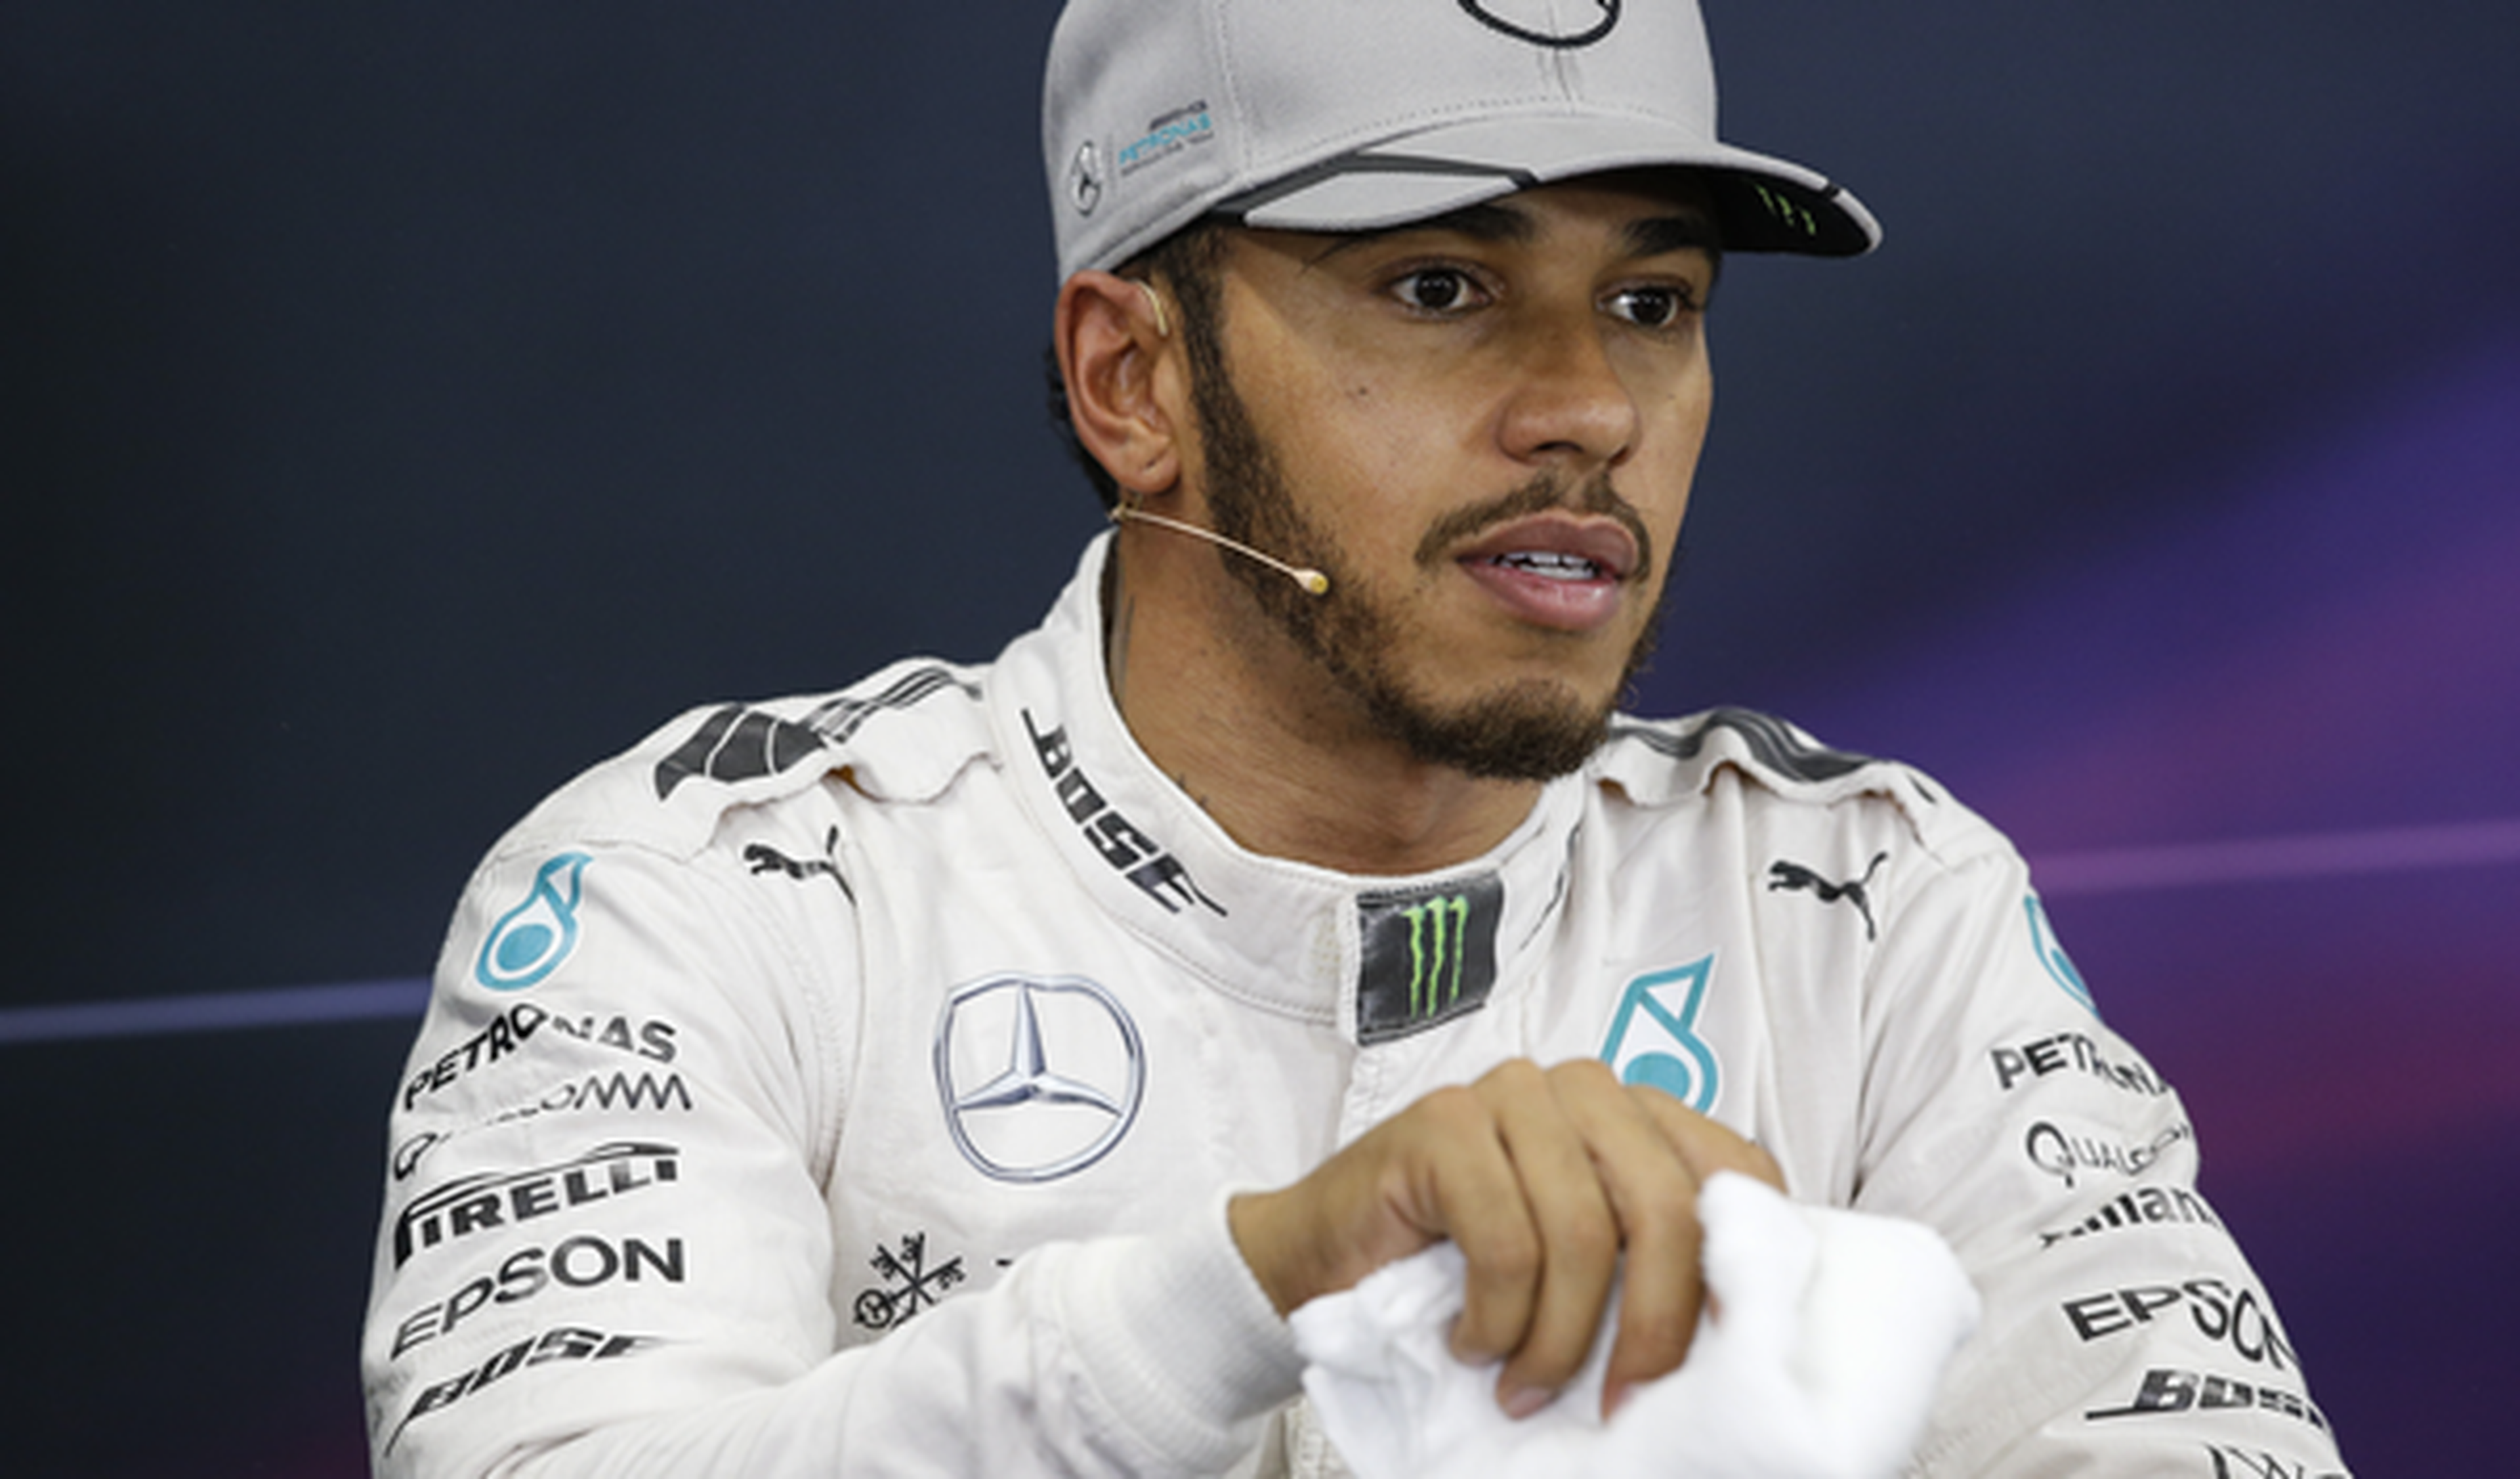 Lewis Hamilton ningunea a la prensa en Japón